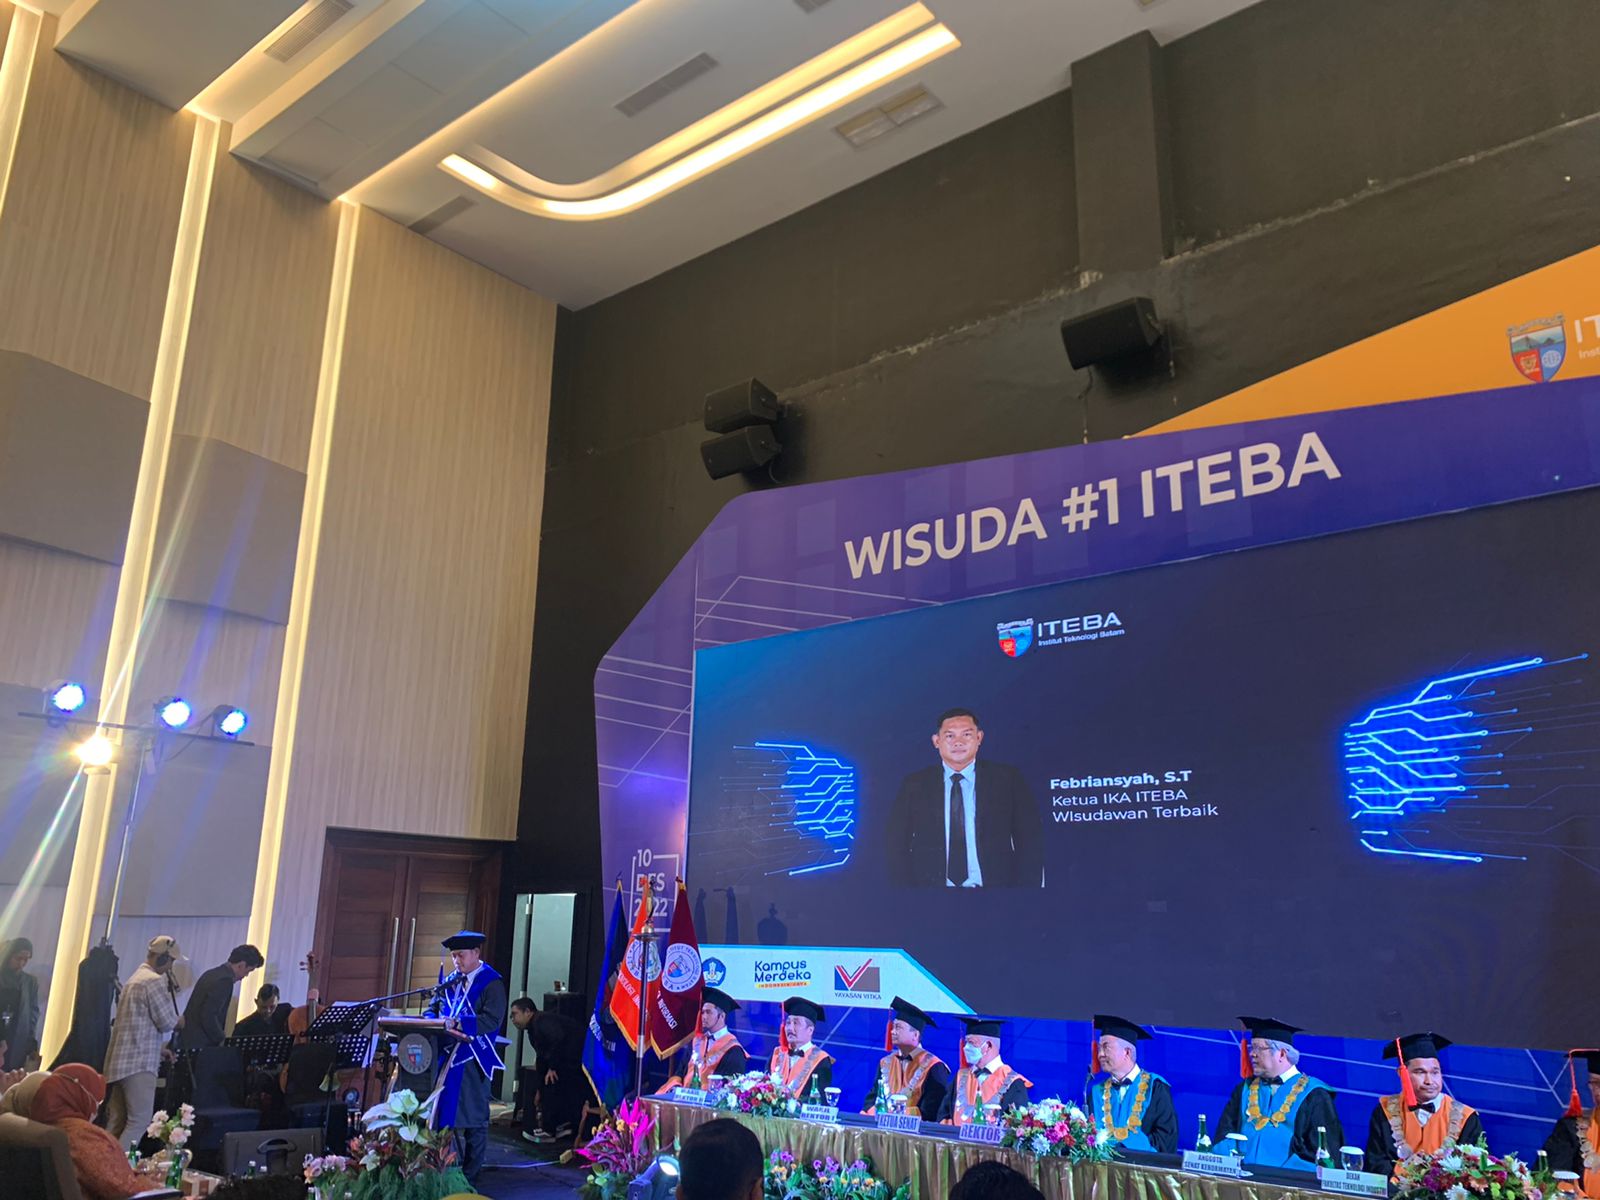 Febriansyah S.T Resmi Menjadi Ketua Ikatan Keluarga Alumni (IKA) ITEBA